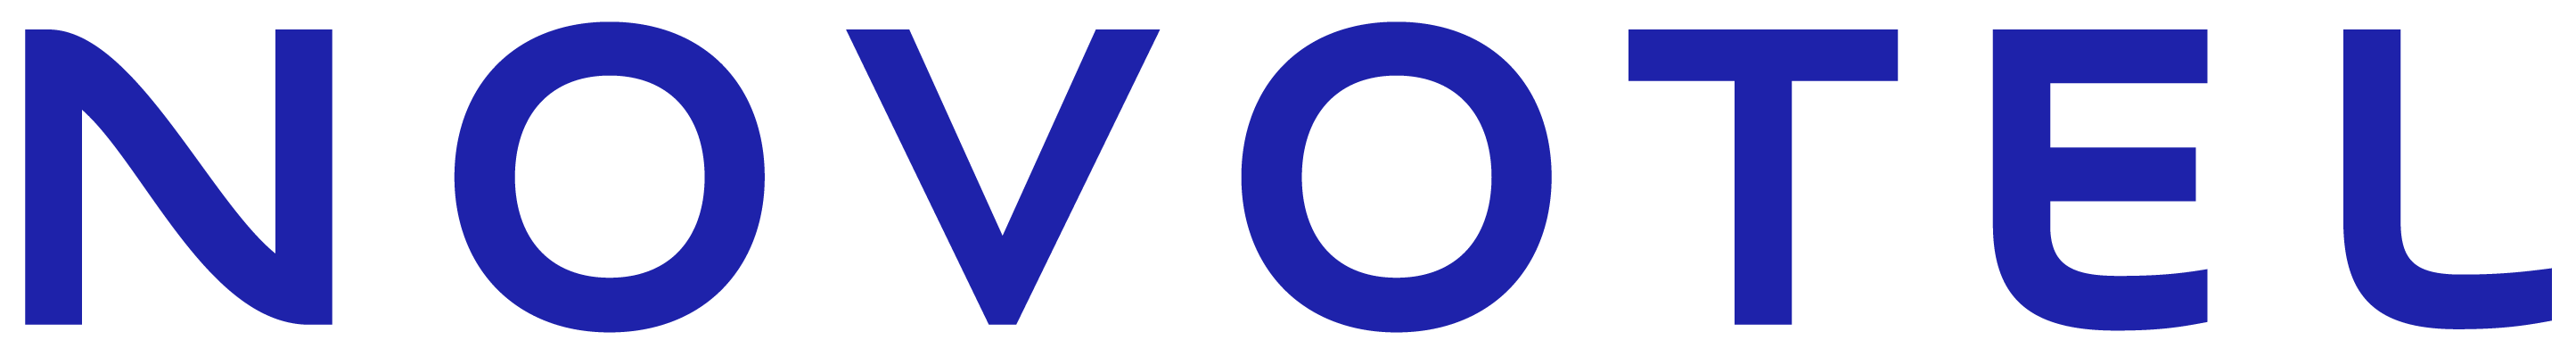 Novotel_logo_2019_RVB (002)